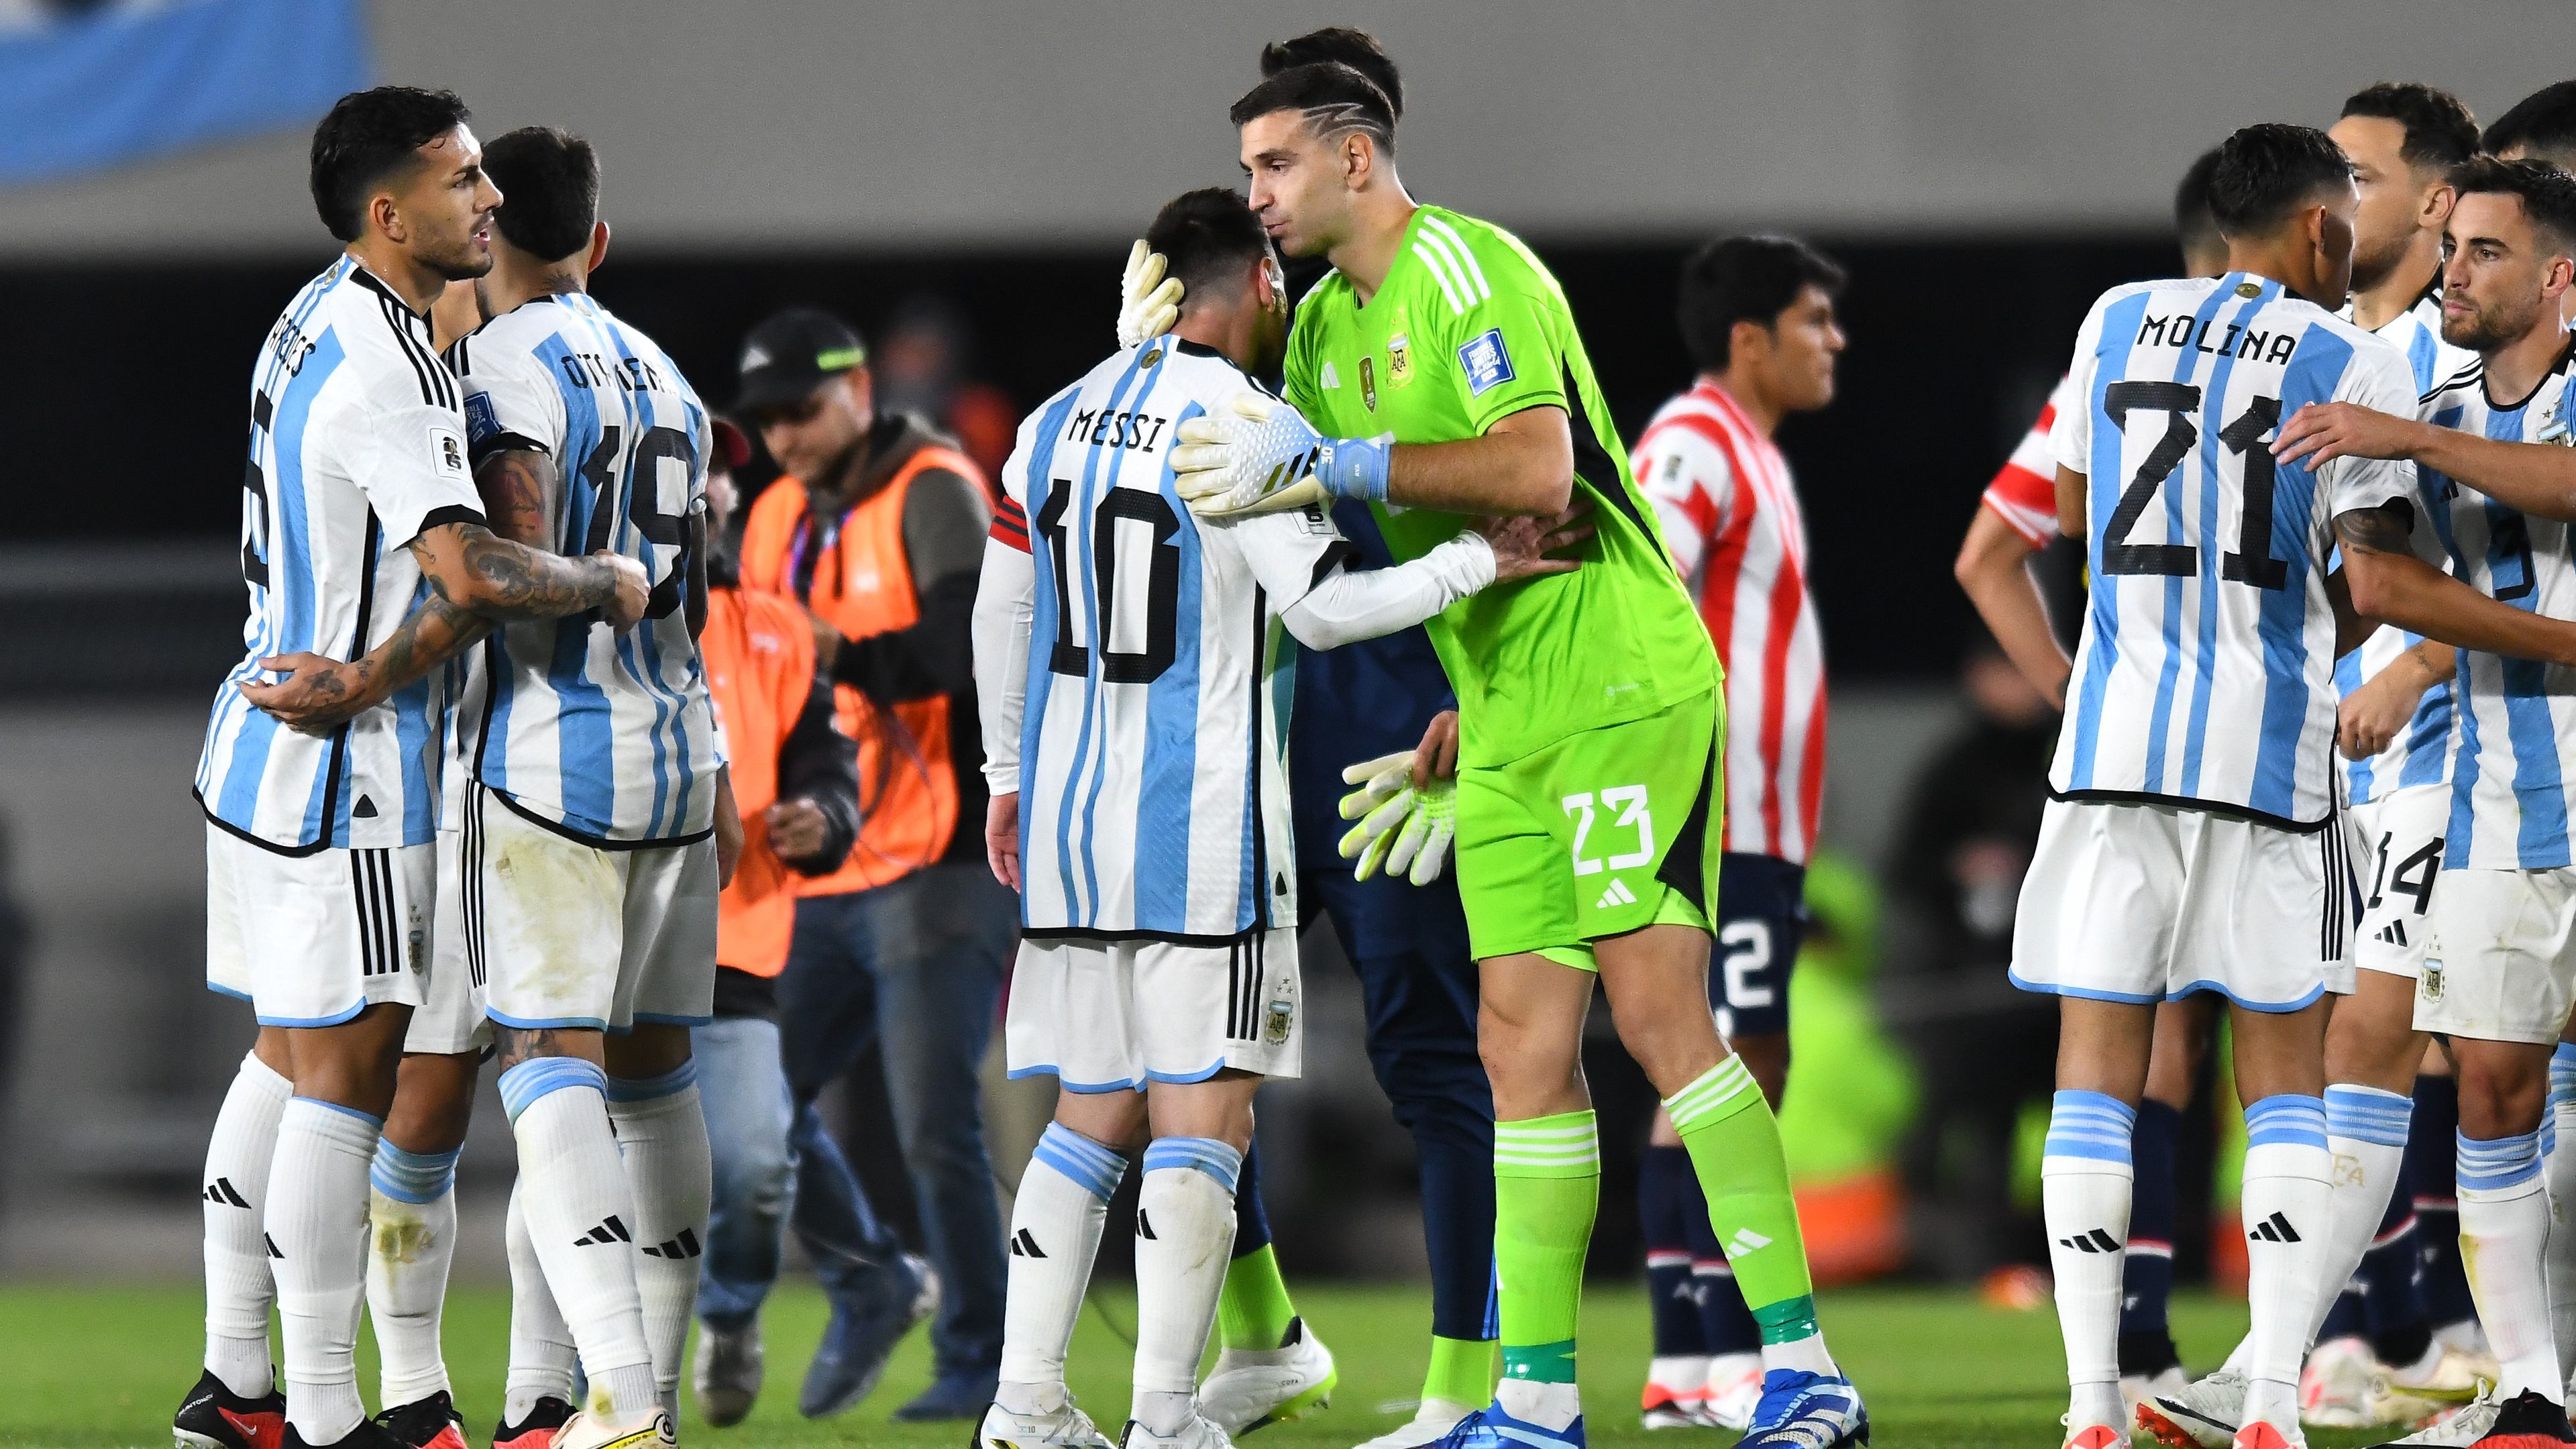 Tras su lesión, Messi también jugó y Martínez impuso el récord